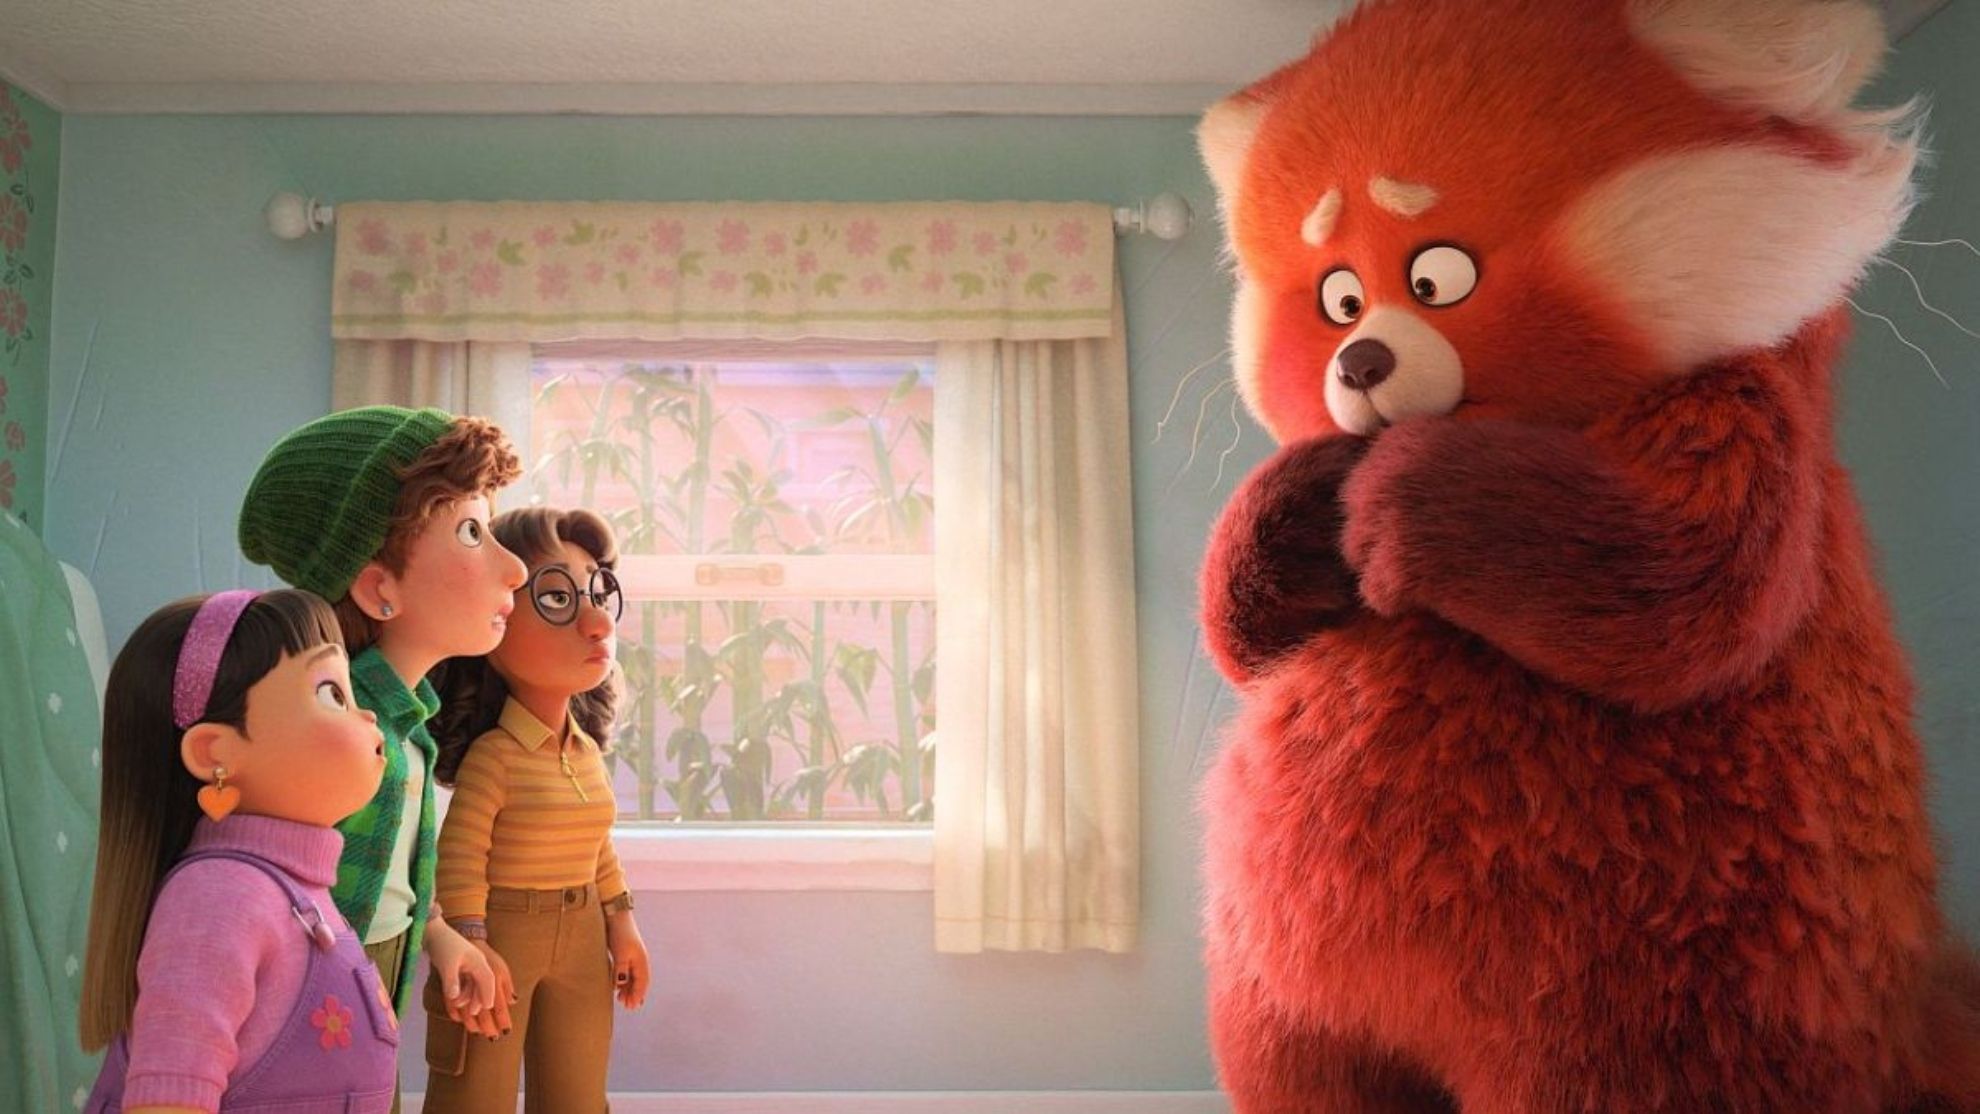 Red, la recensione: Pixar fa centro raccontando l’adolescenza ormonale dei millennials